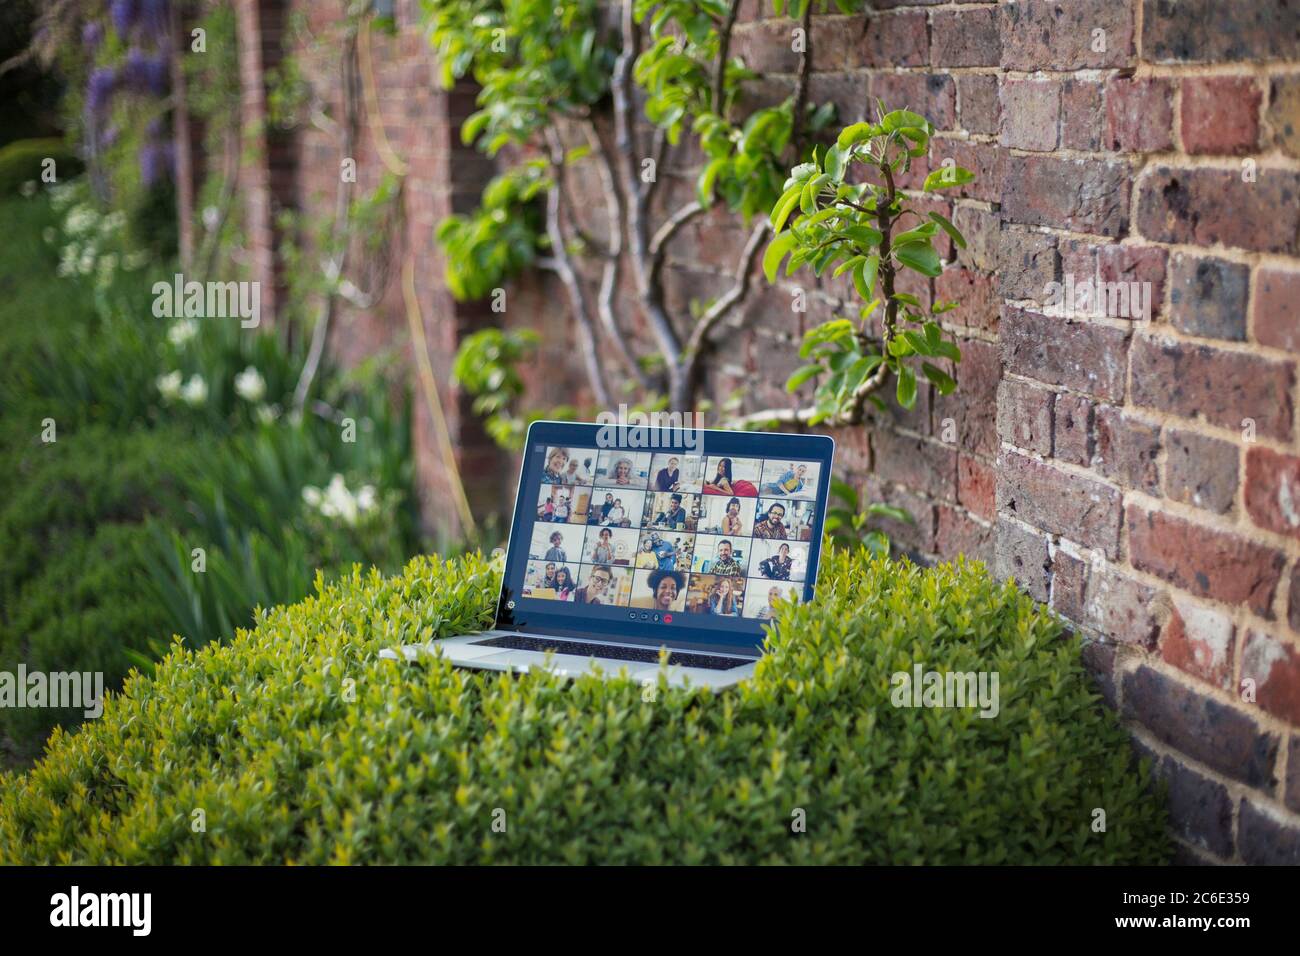 Chat video degli amici sullo schermo del computer portatile in giardino Foto Stock